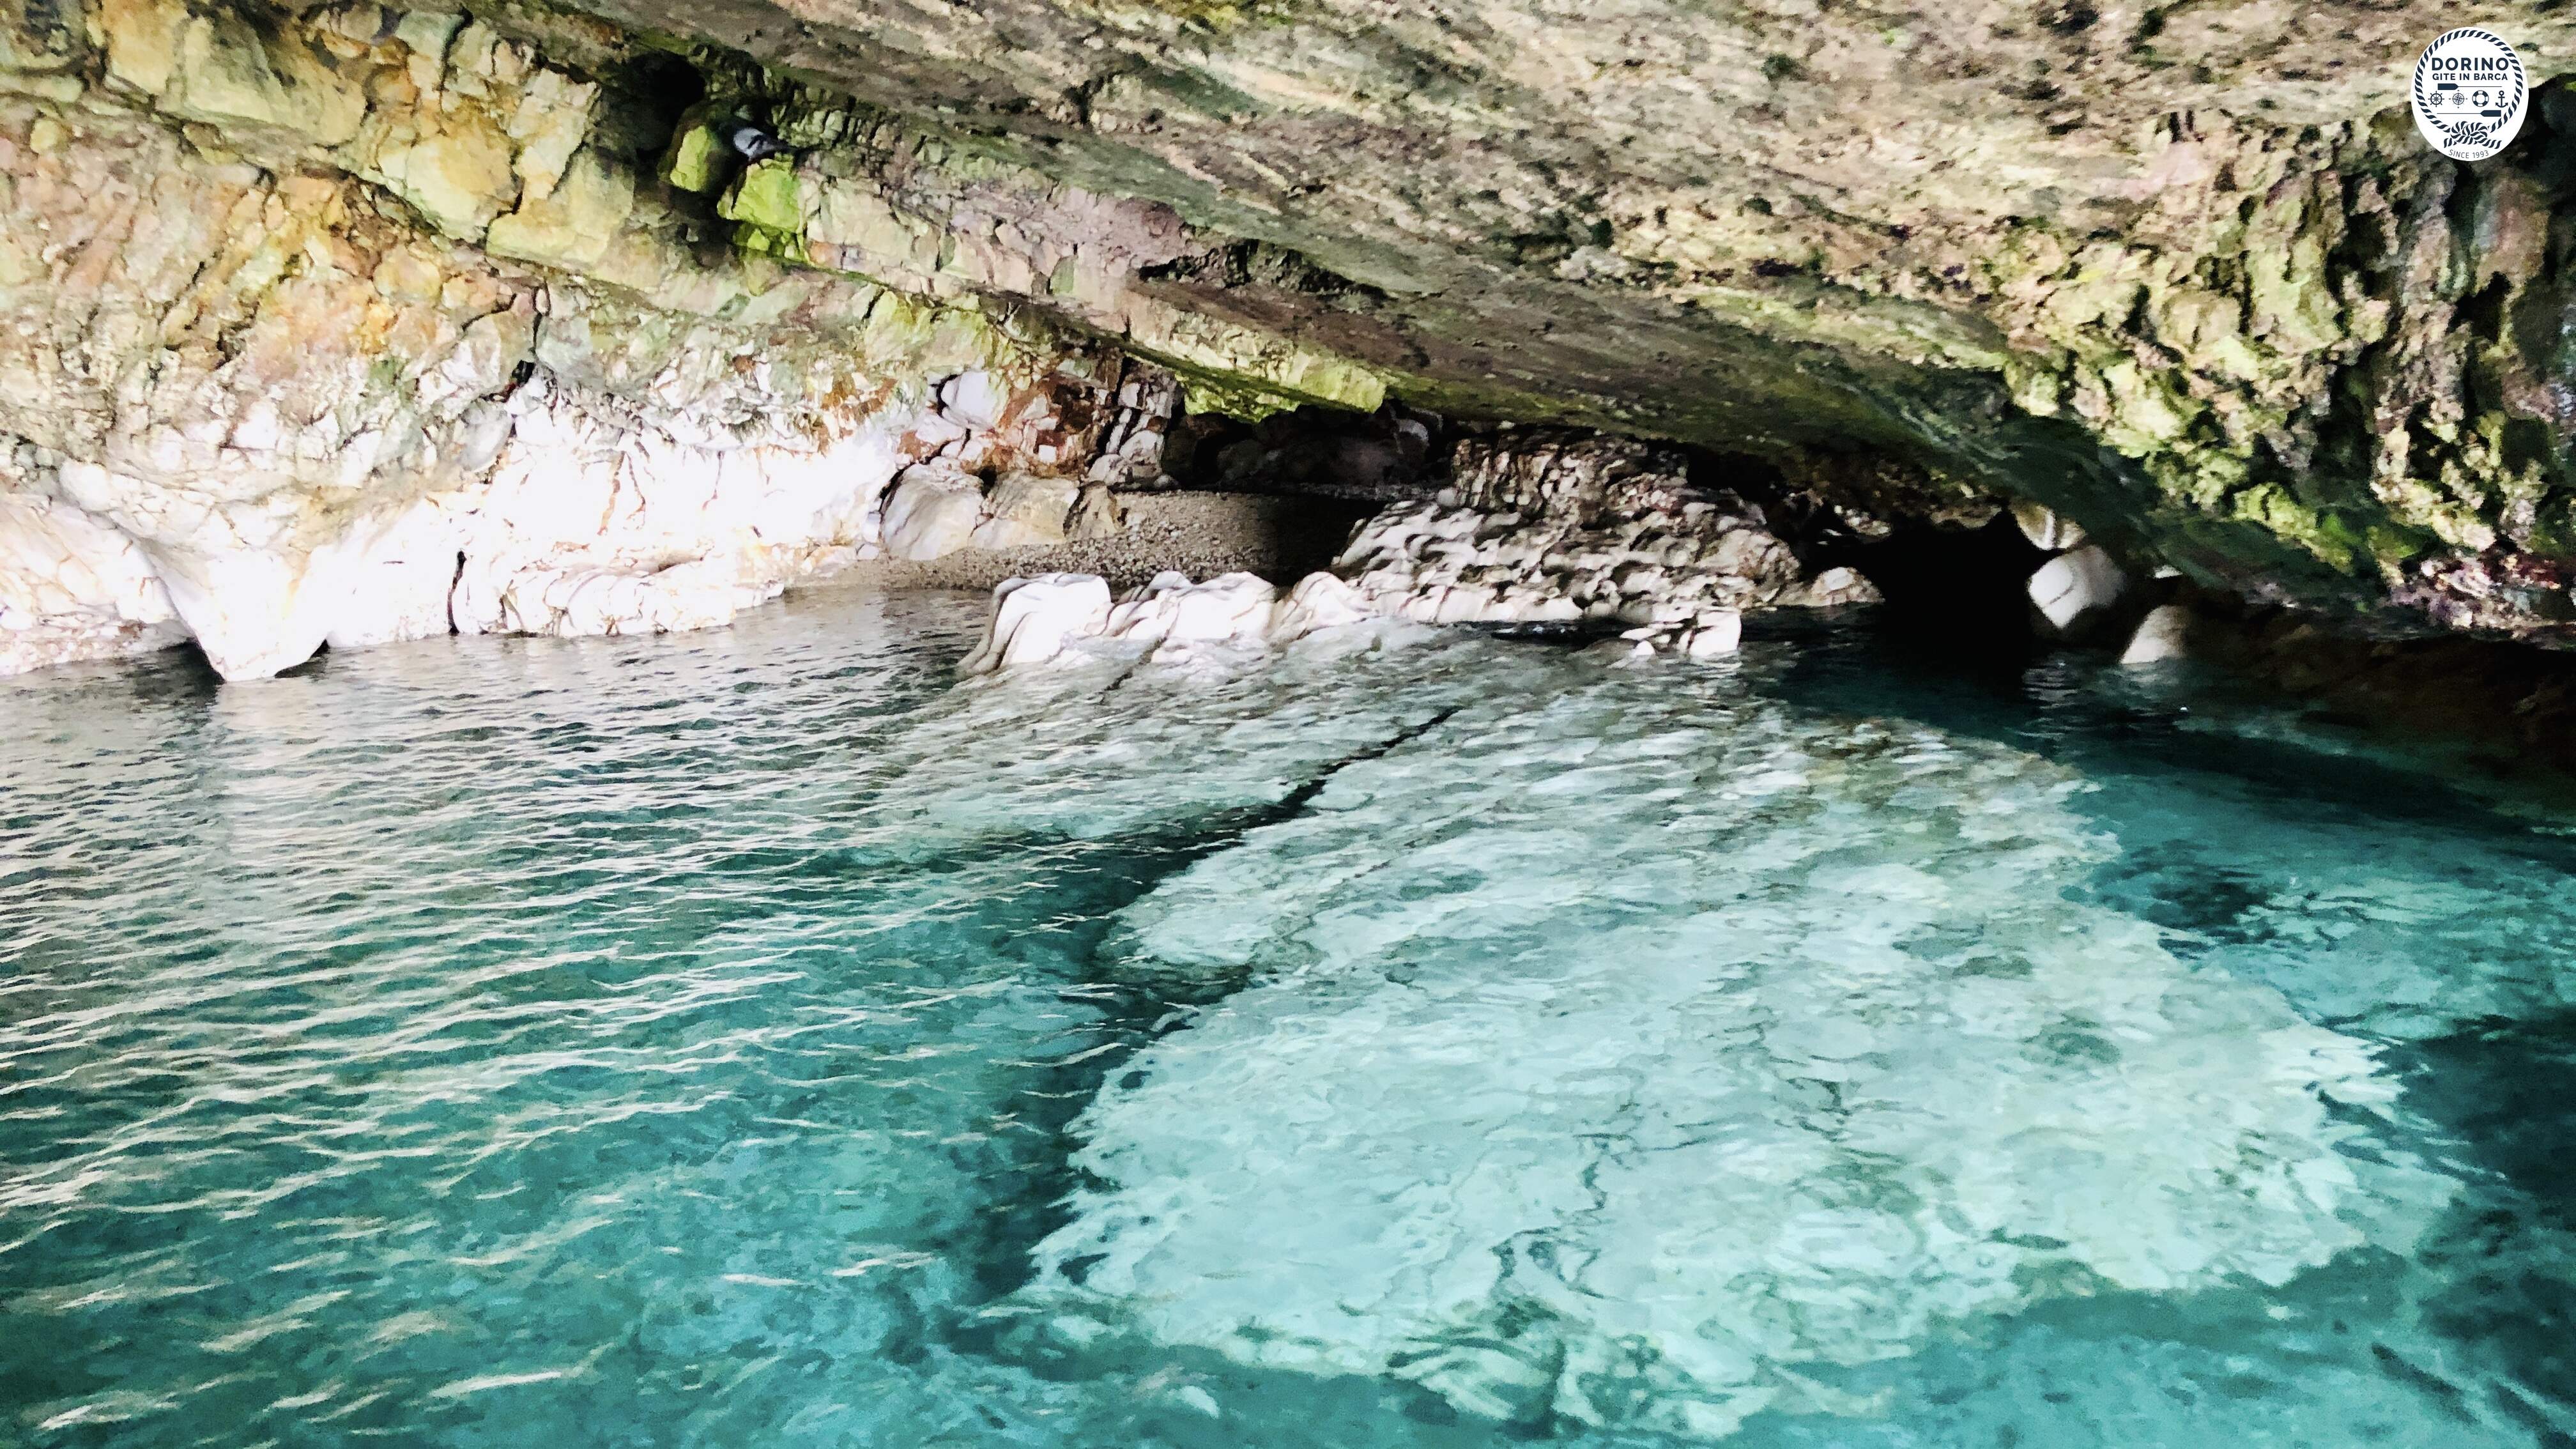 Grotta marina di Polignano a mare che conserva una spiaggetta nascosta di ciottoli e lapilli